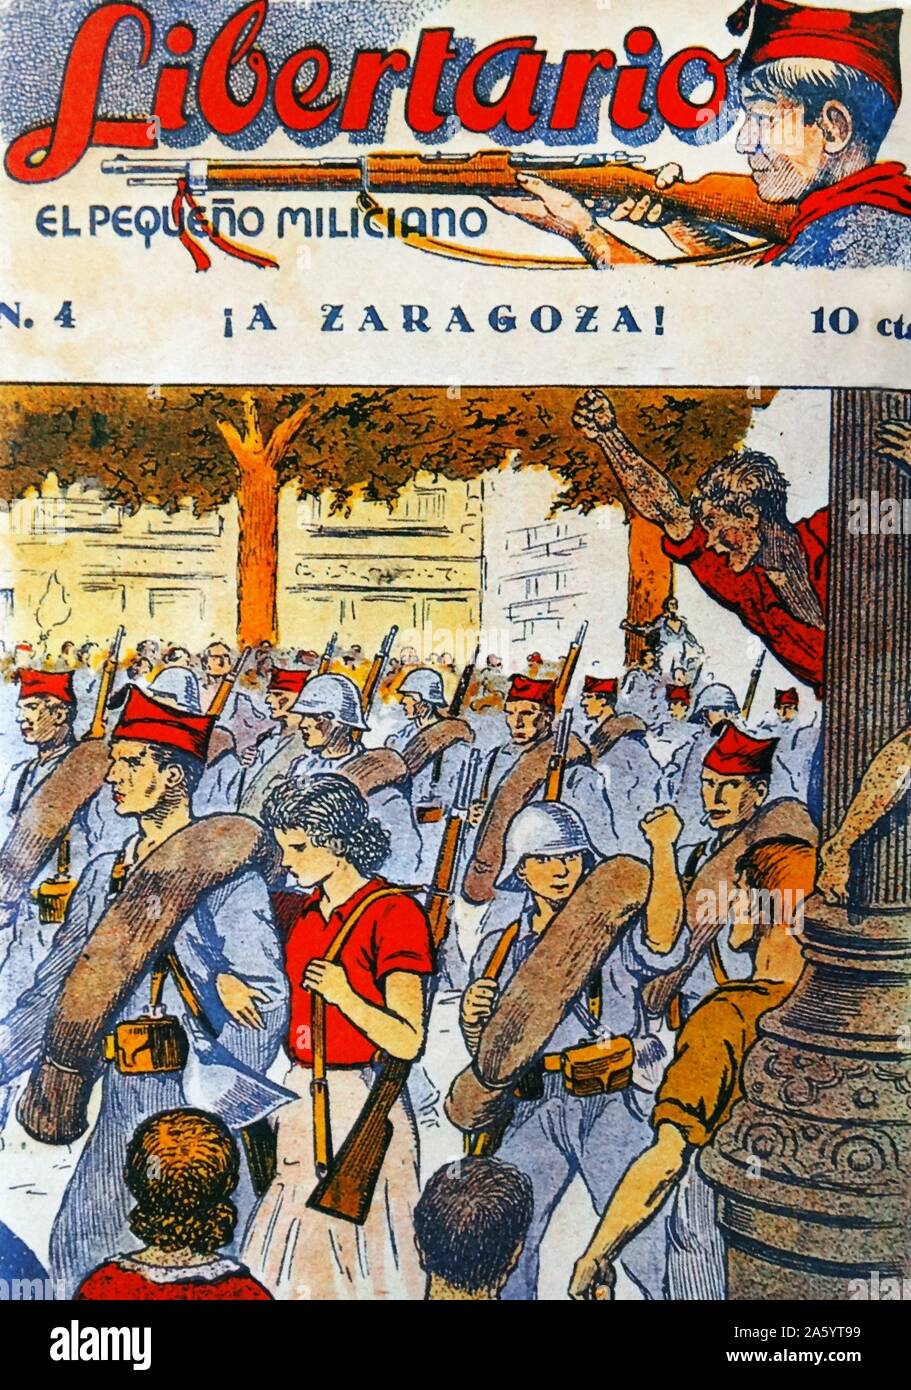 Libertario el pequeno miliciano' Falangist propaganda giovanile rivista pubblicata durante la Guerra Civile Spagnola Foto Stock